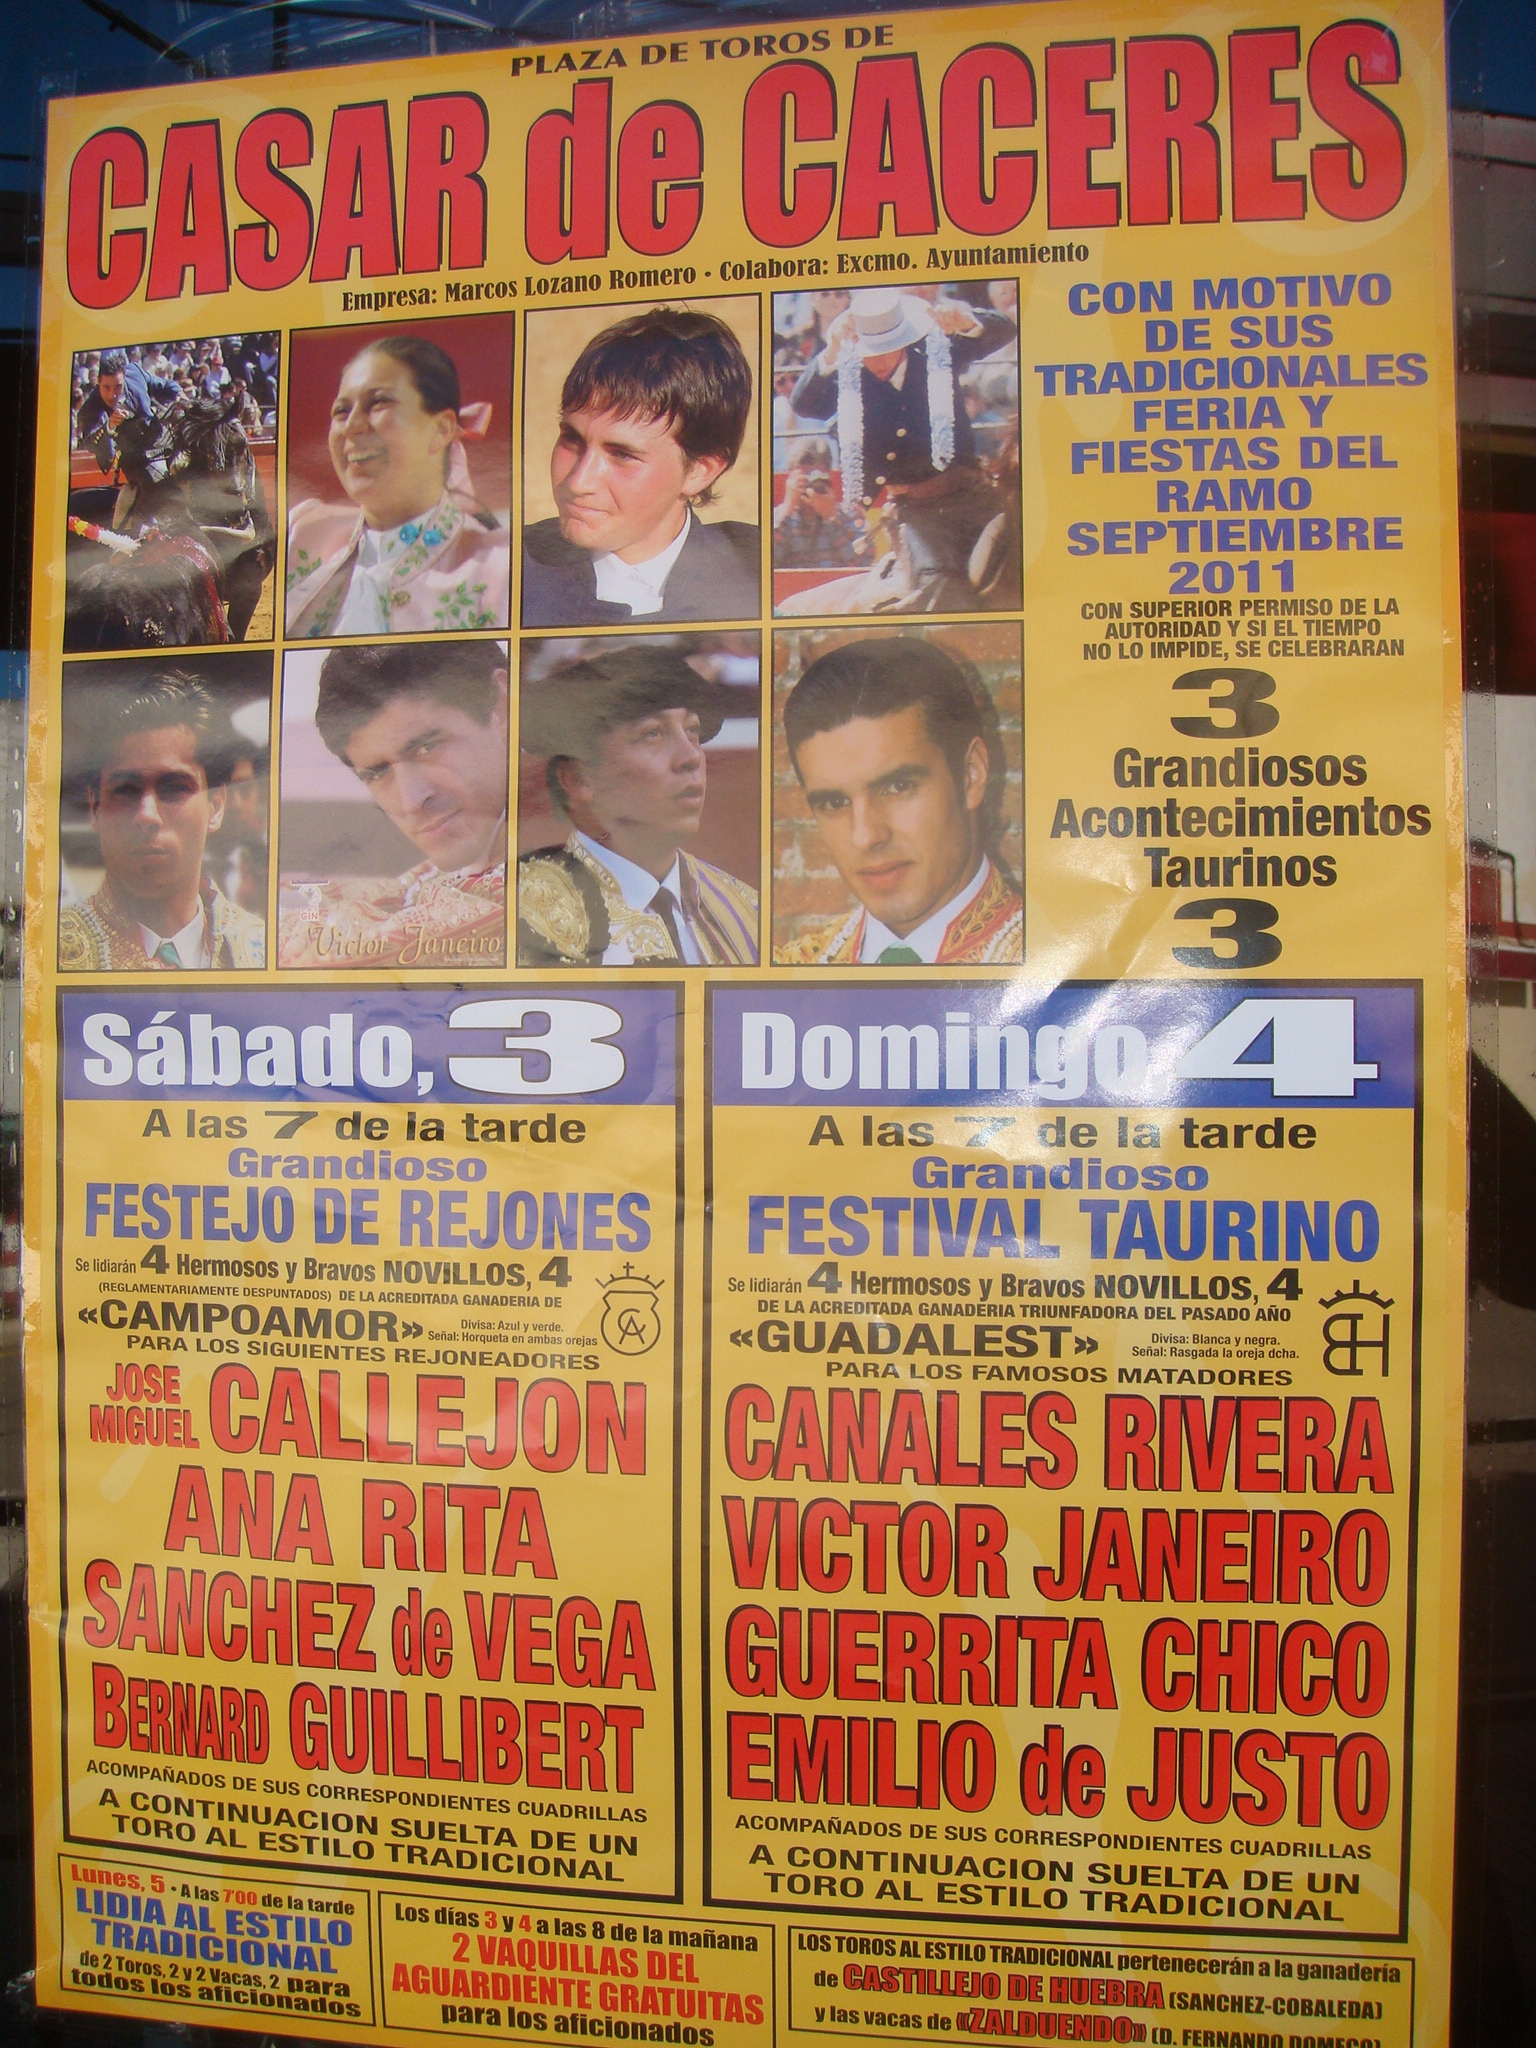 Canales Rivera y Víctor Janeiro, en el cartel taurino del Ramo